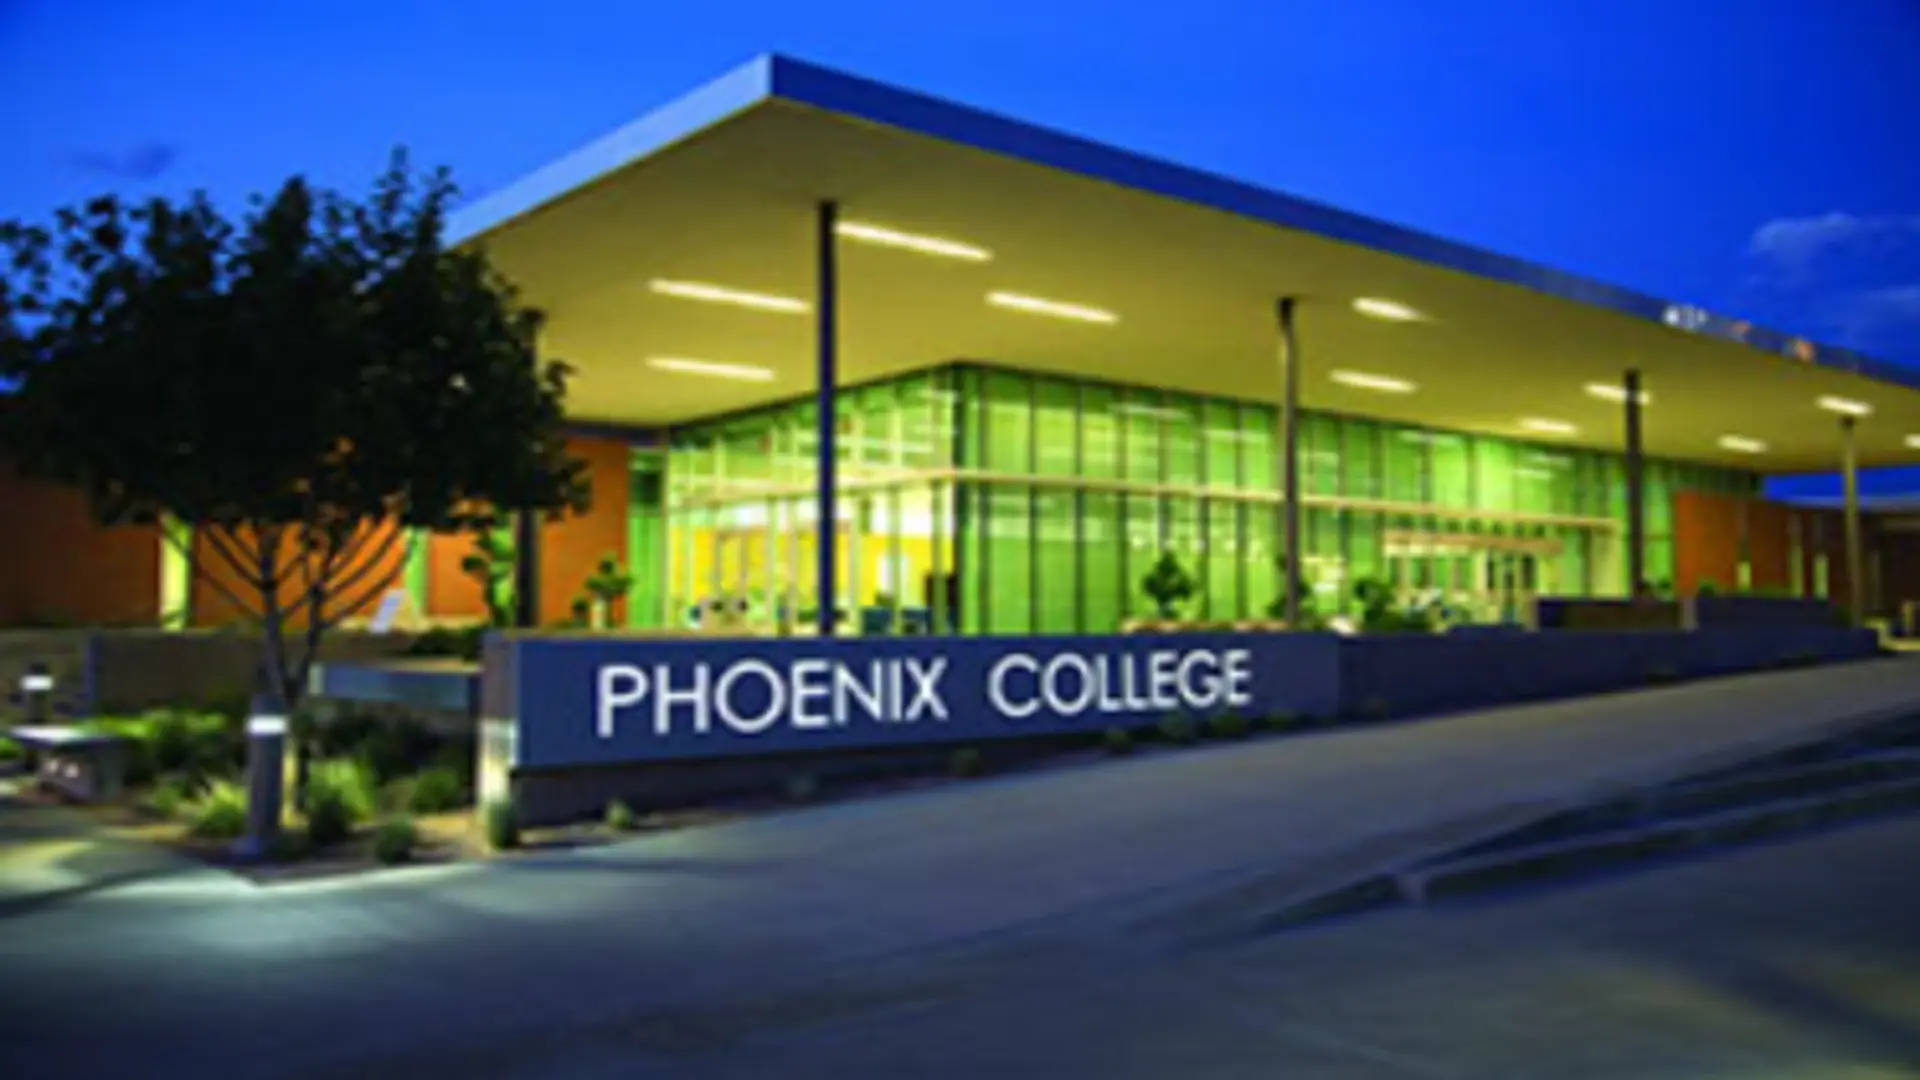 Phoenix College Academy